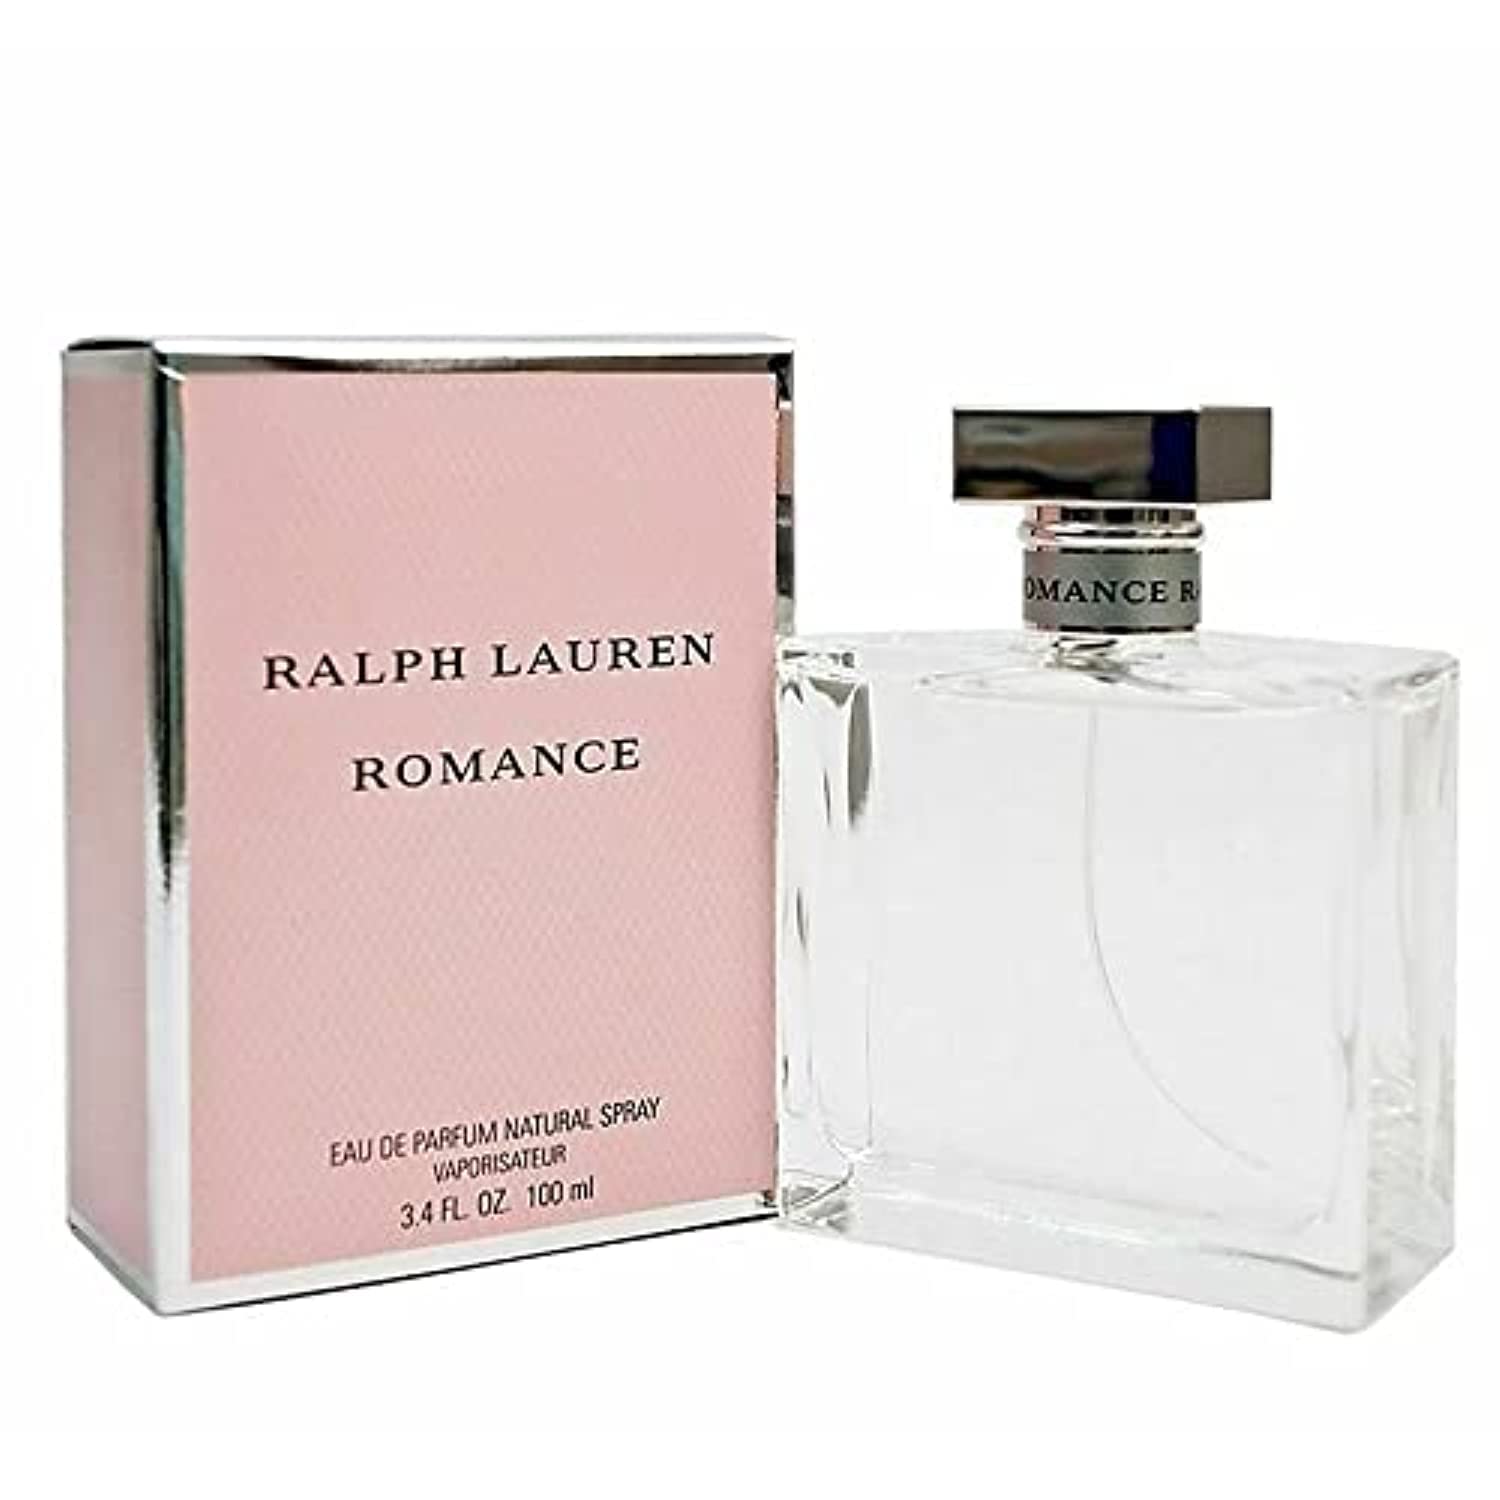 Actualizar 75+ imagen ralph lauren romance perfume 3.4 oz